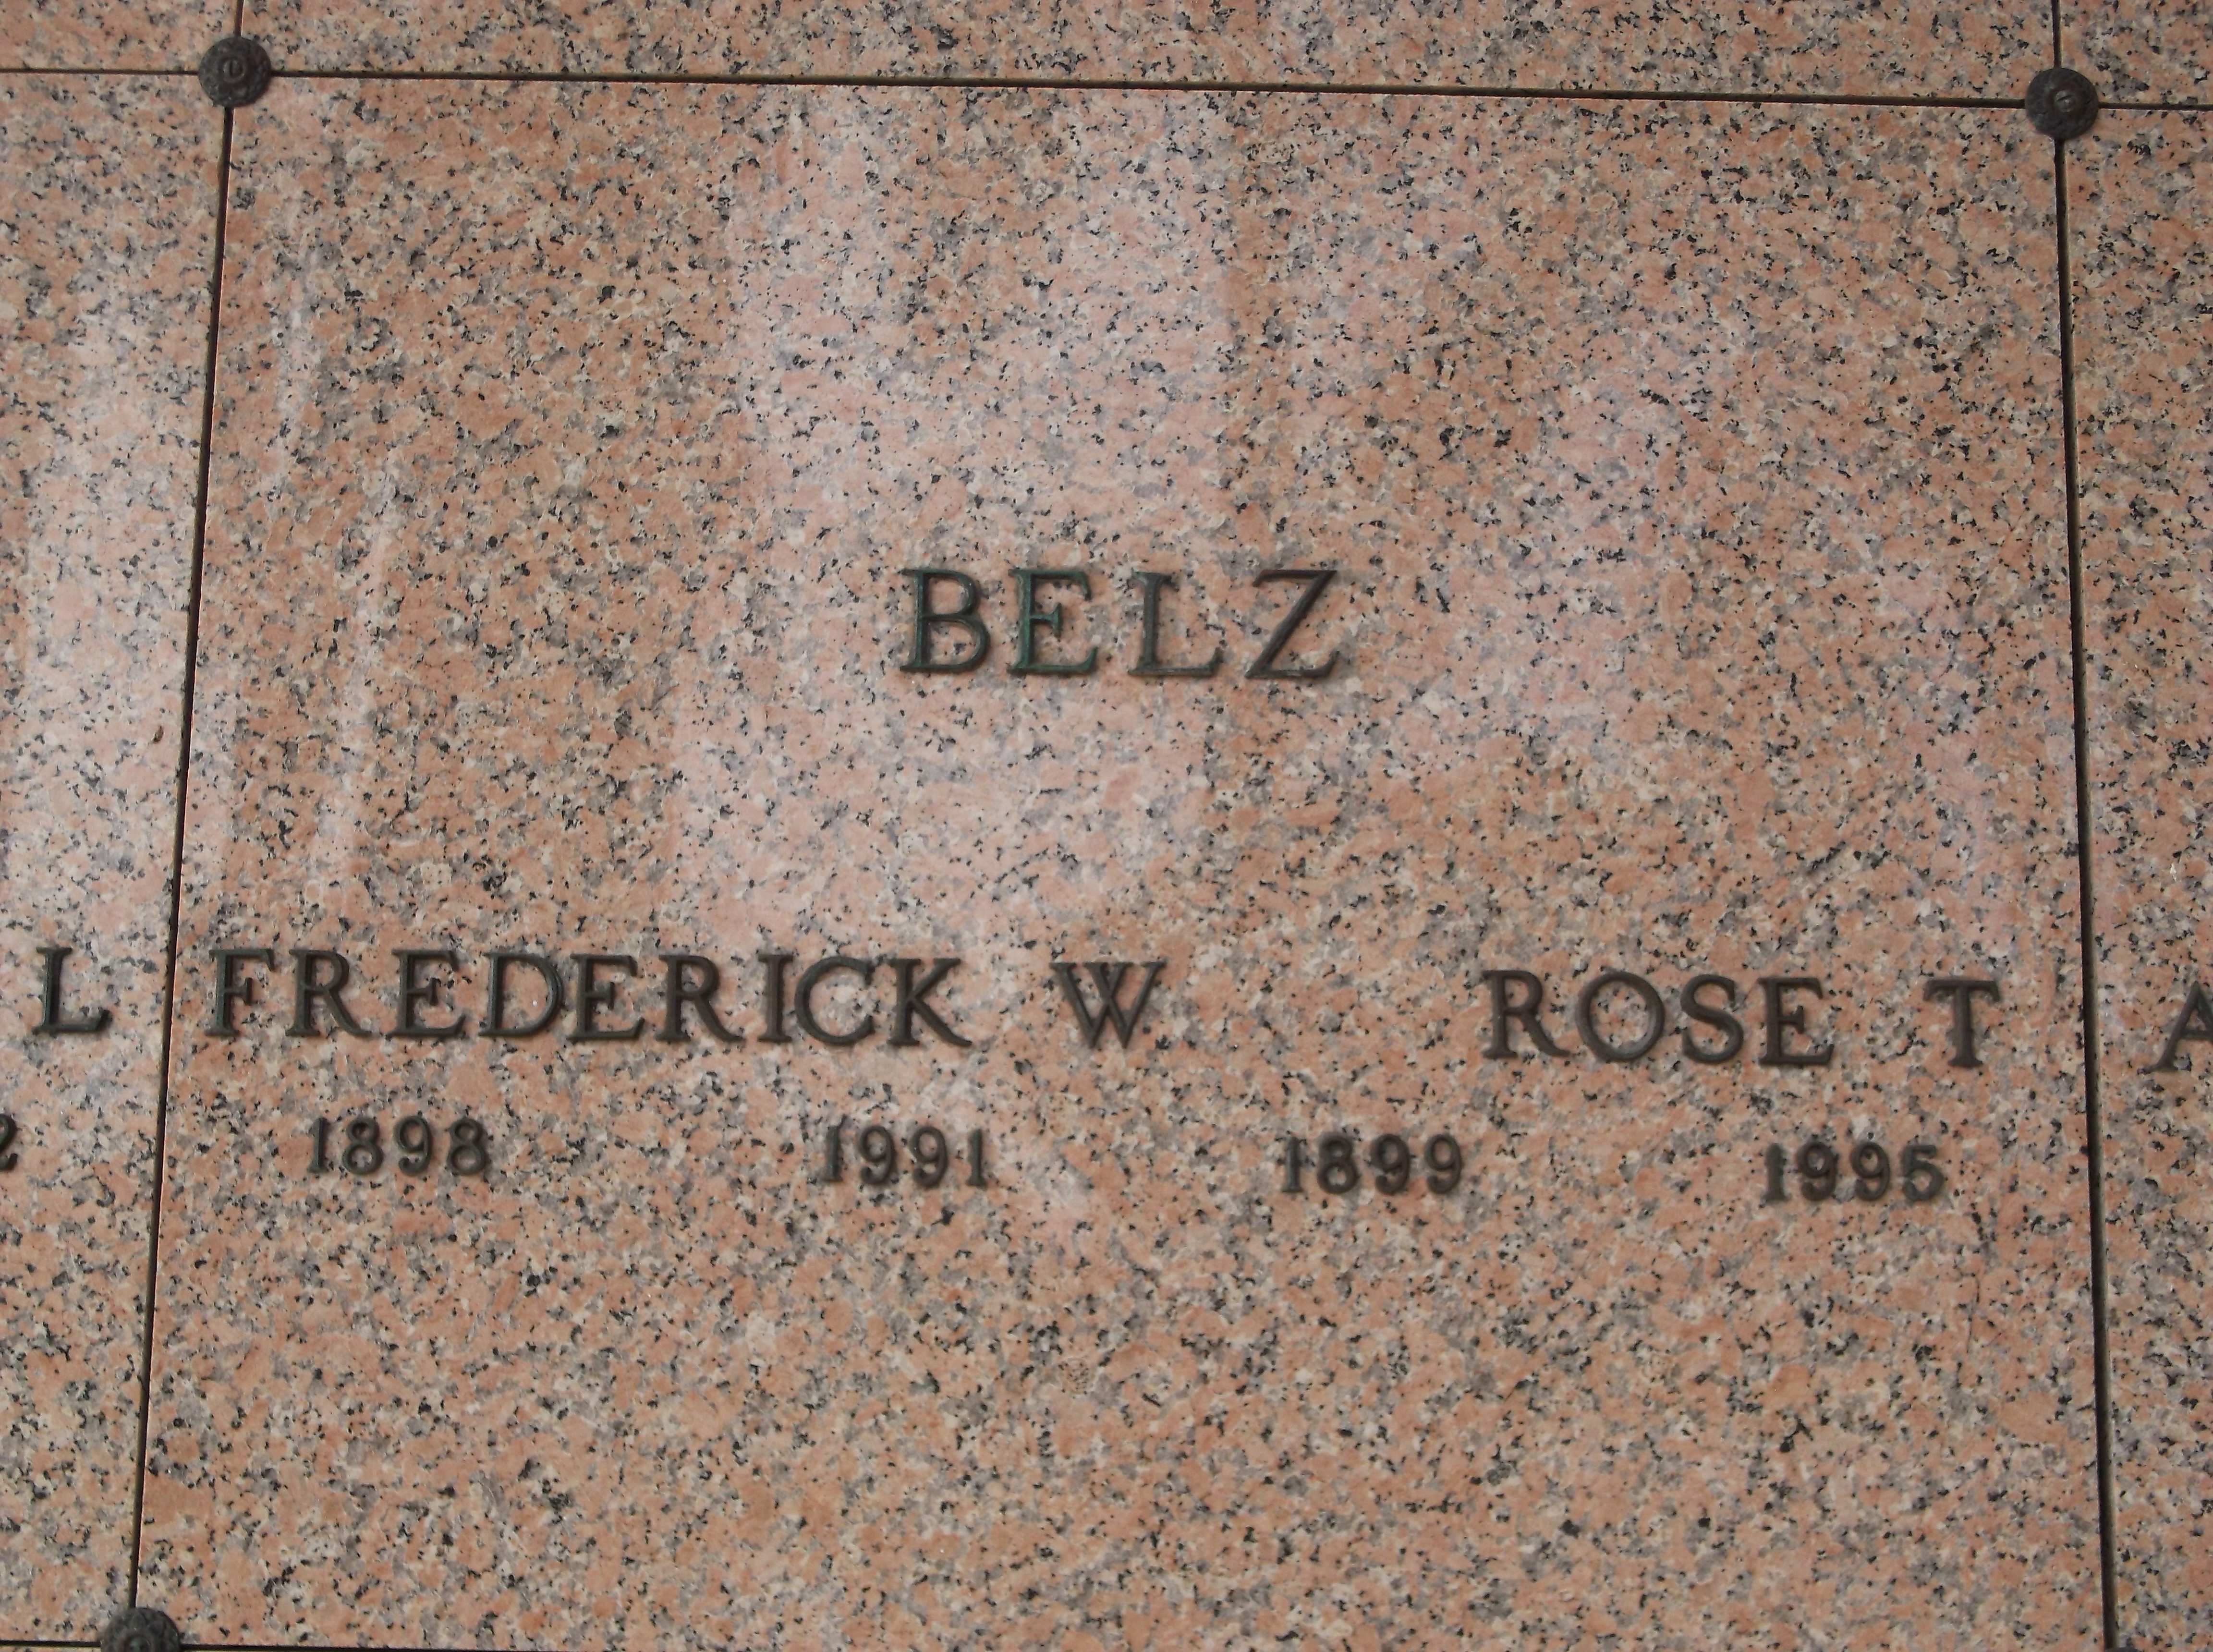 Rose T Belz